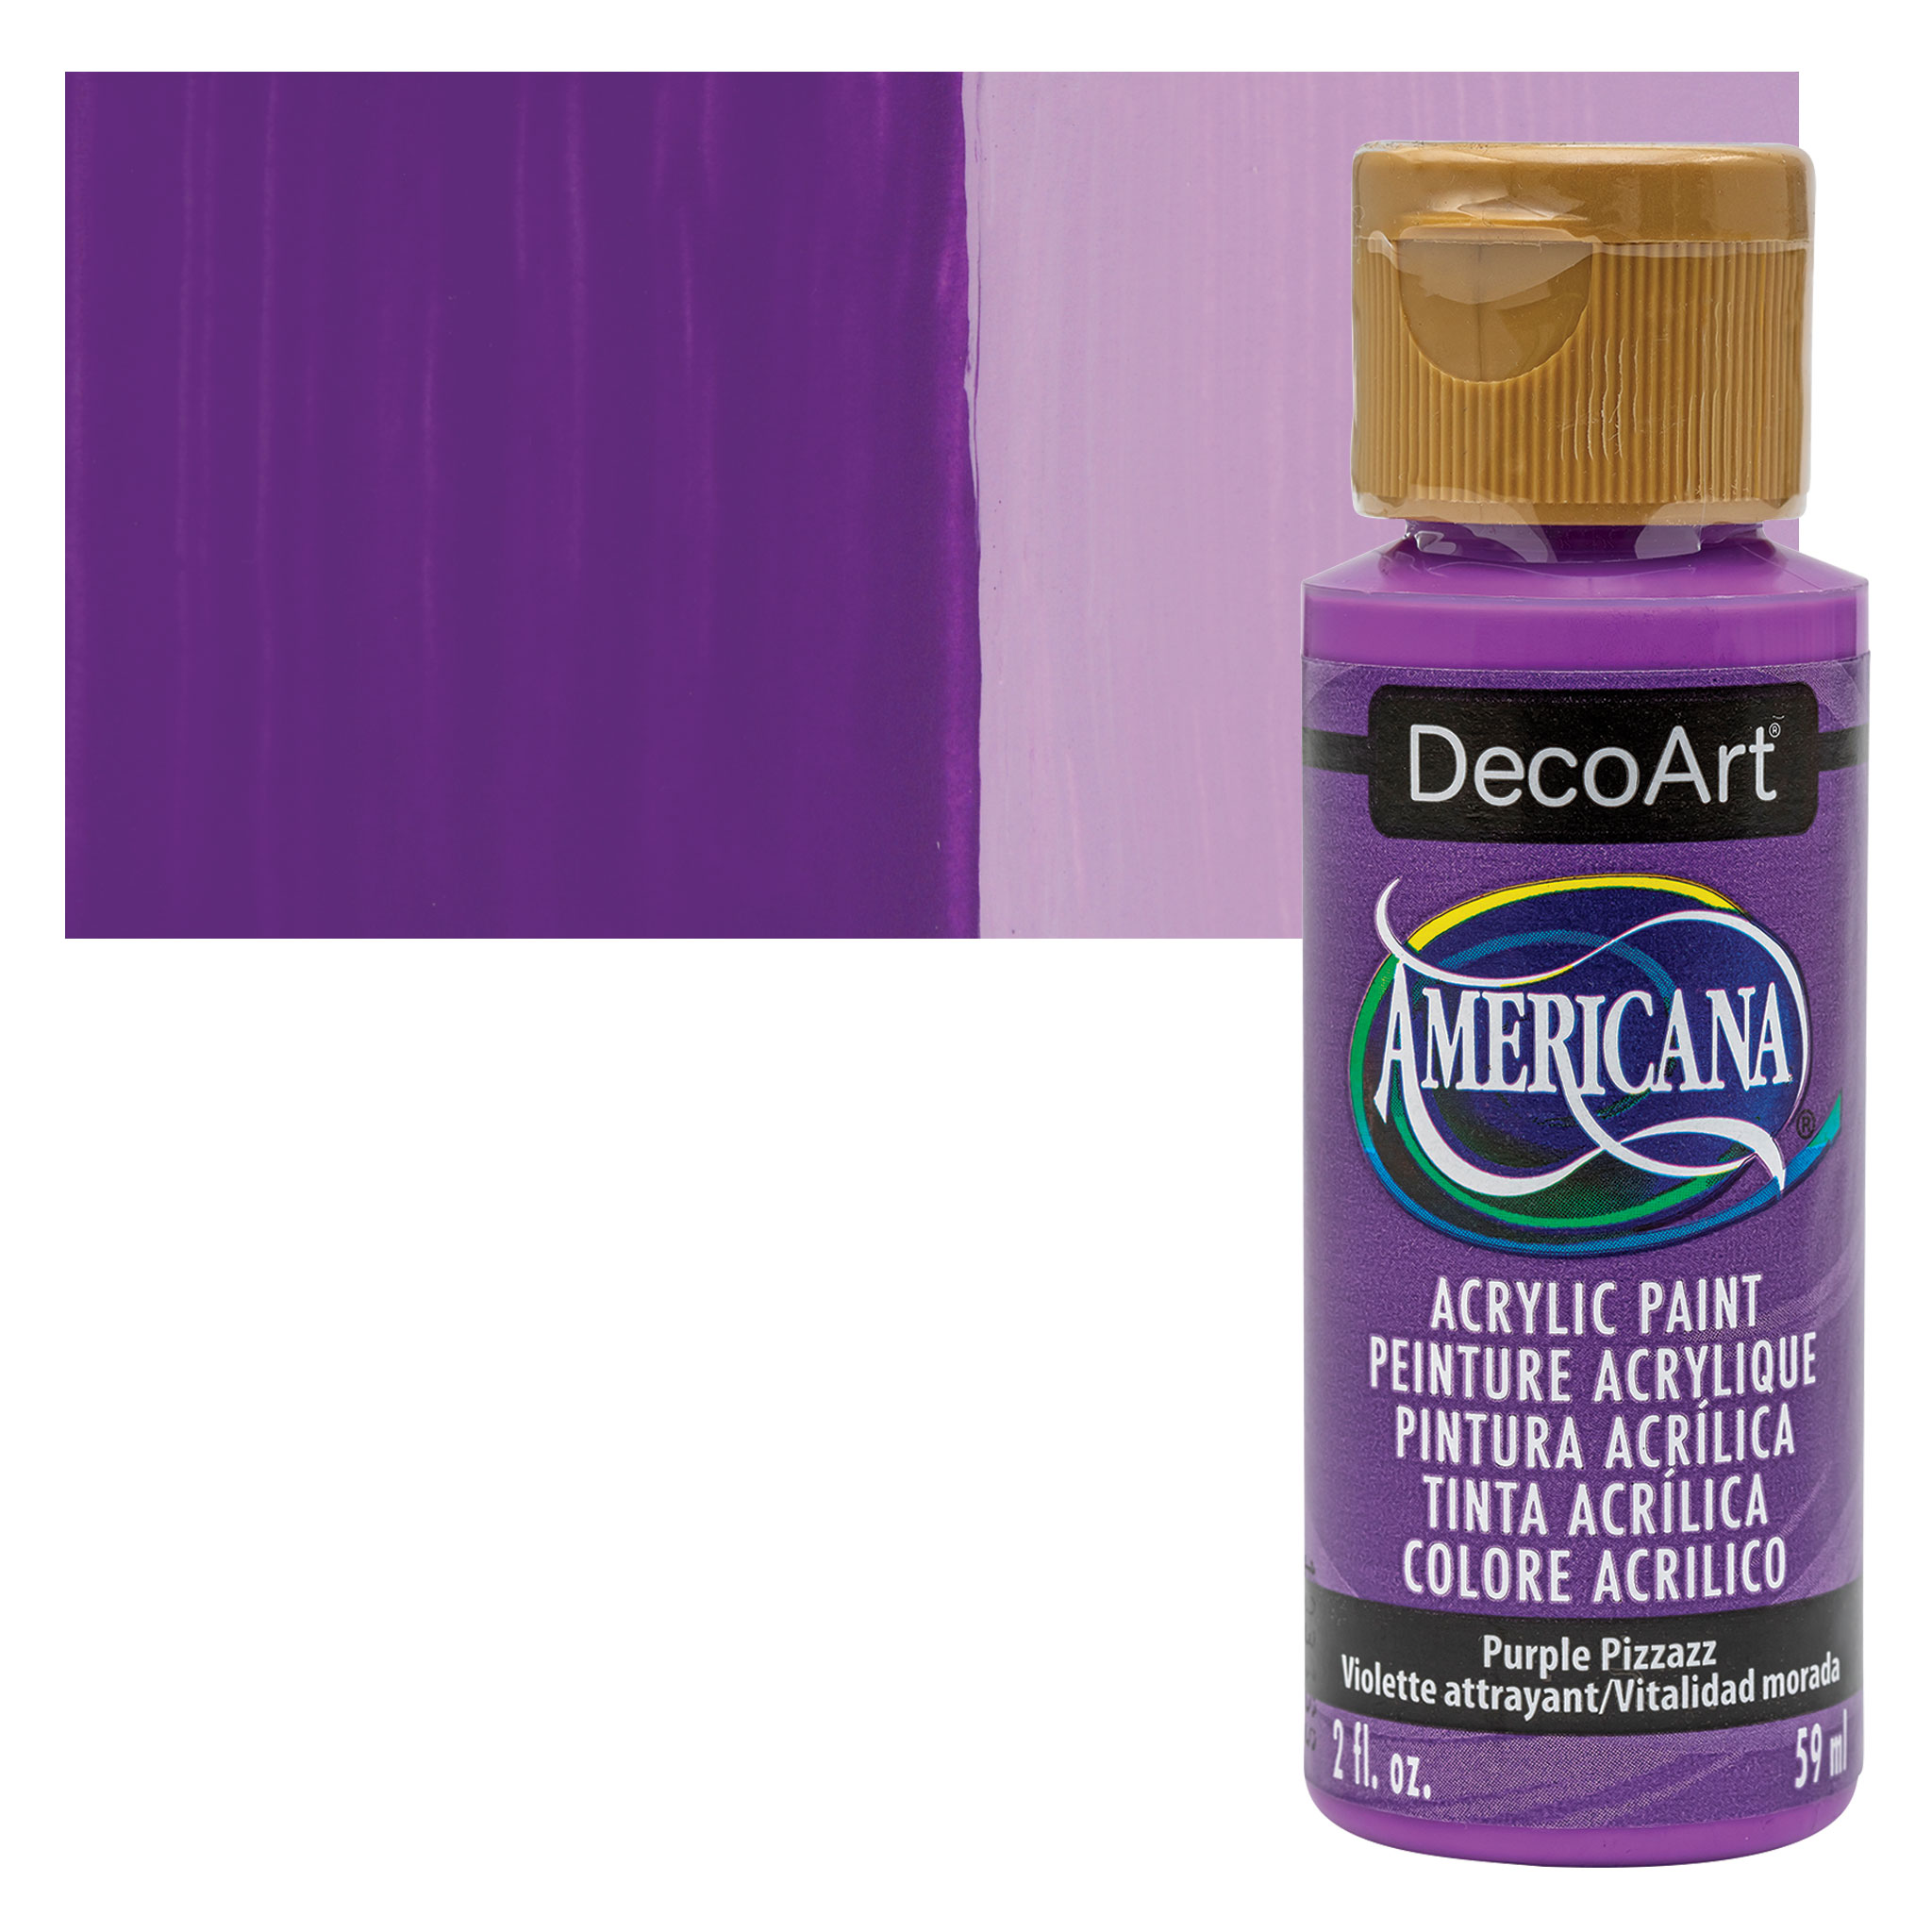 DecoArt Americana Glow in the Dark Acrylic Paint - 2-ounce - Purple